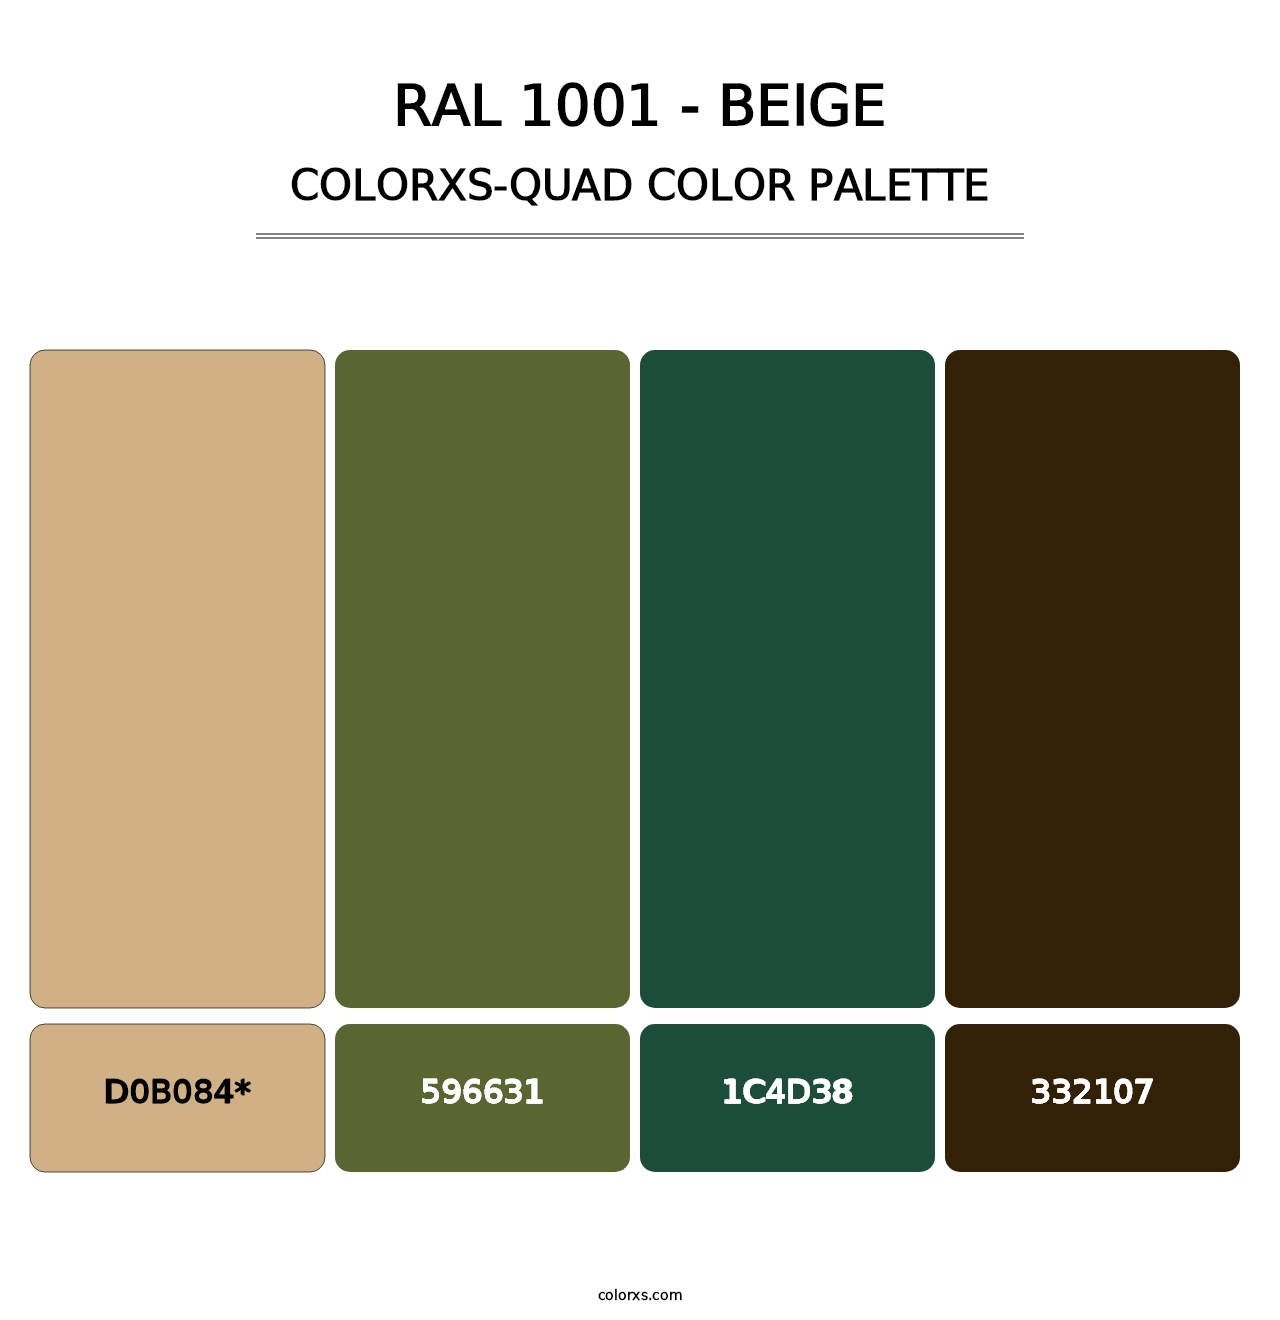 RAL 1001 - Beige - Colorxs Quad Palette